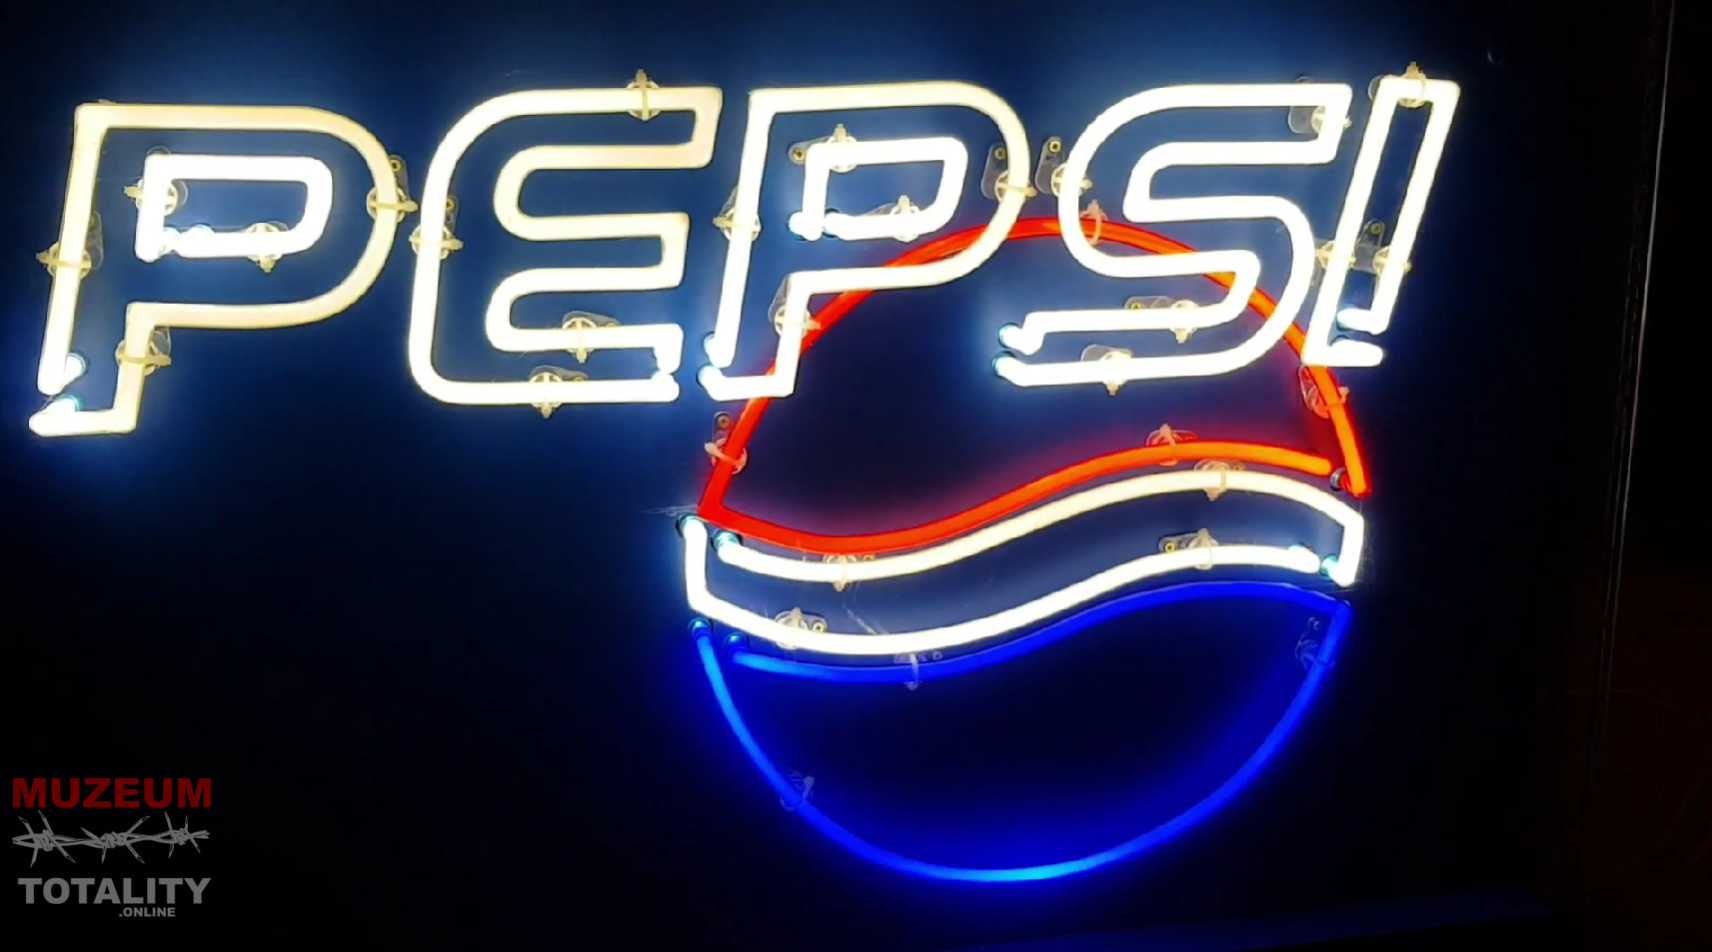 Neónová reklama Pepsi v Múzeu totality